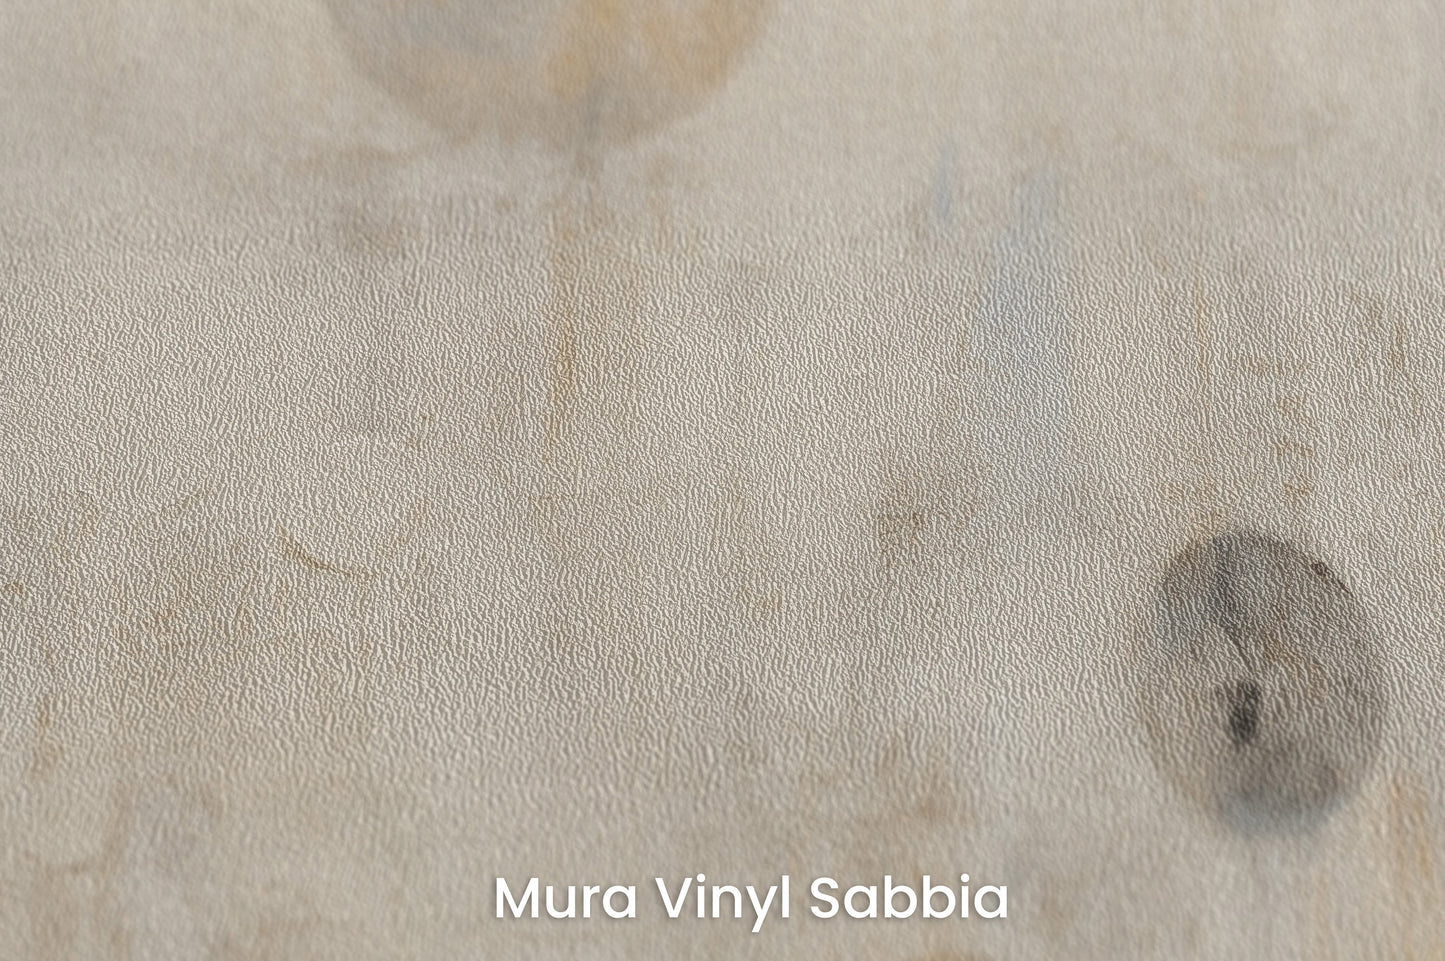 Zbliżenie na artystyczną fototapetę o nazwie WHISPERING ORBITAL SHADOWS na podłożu Mura Vinyl Sabbia struktura grubego ziarna piasku.